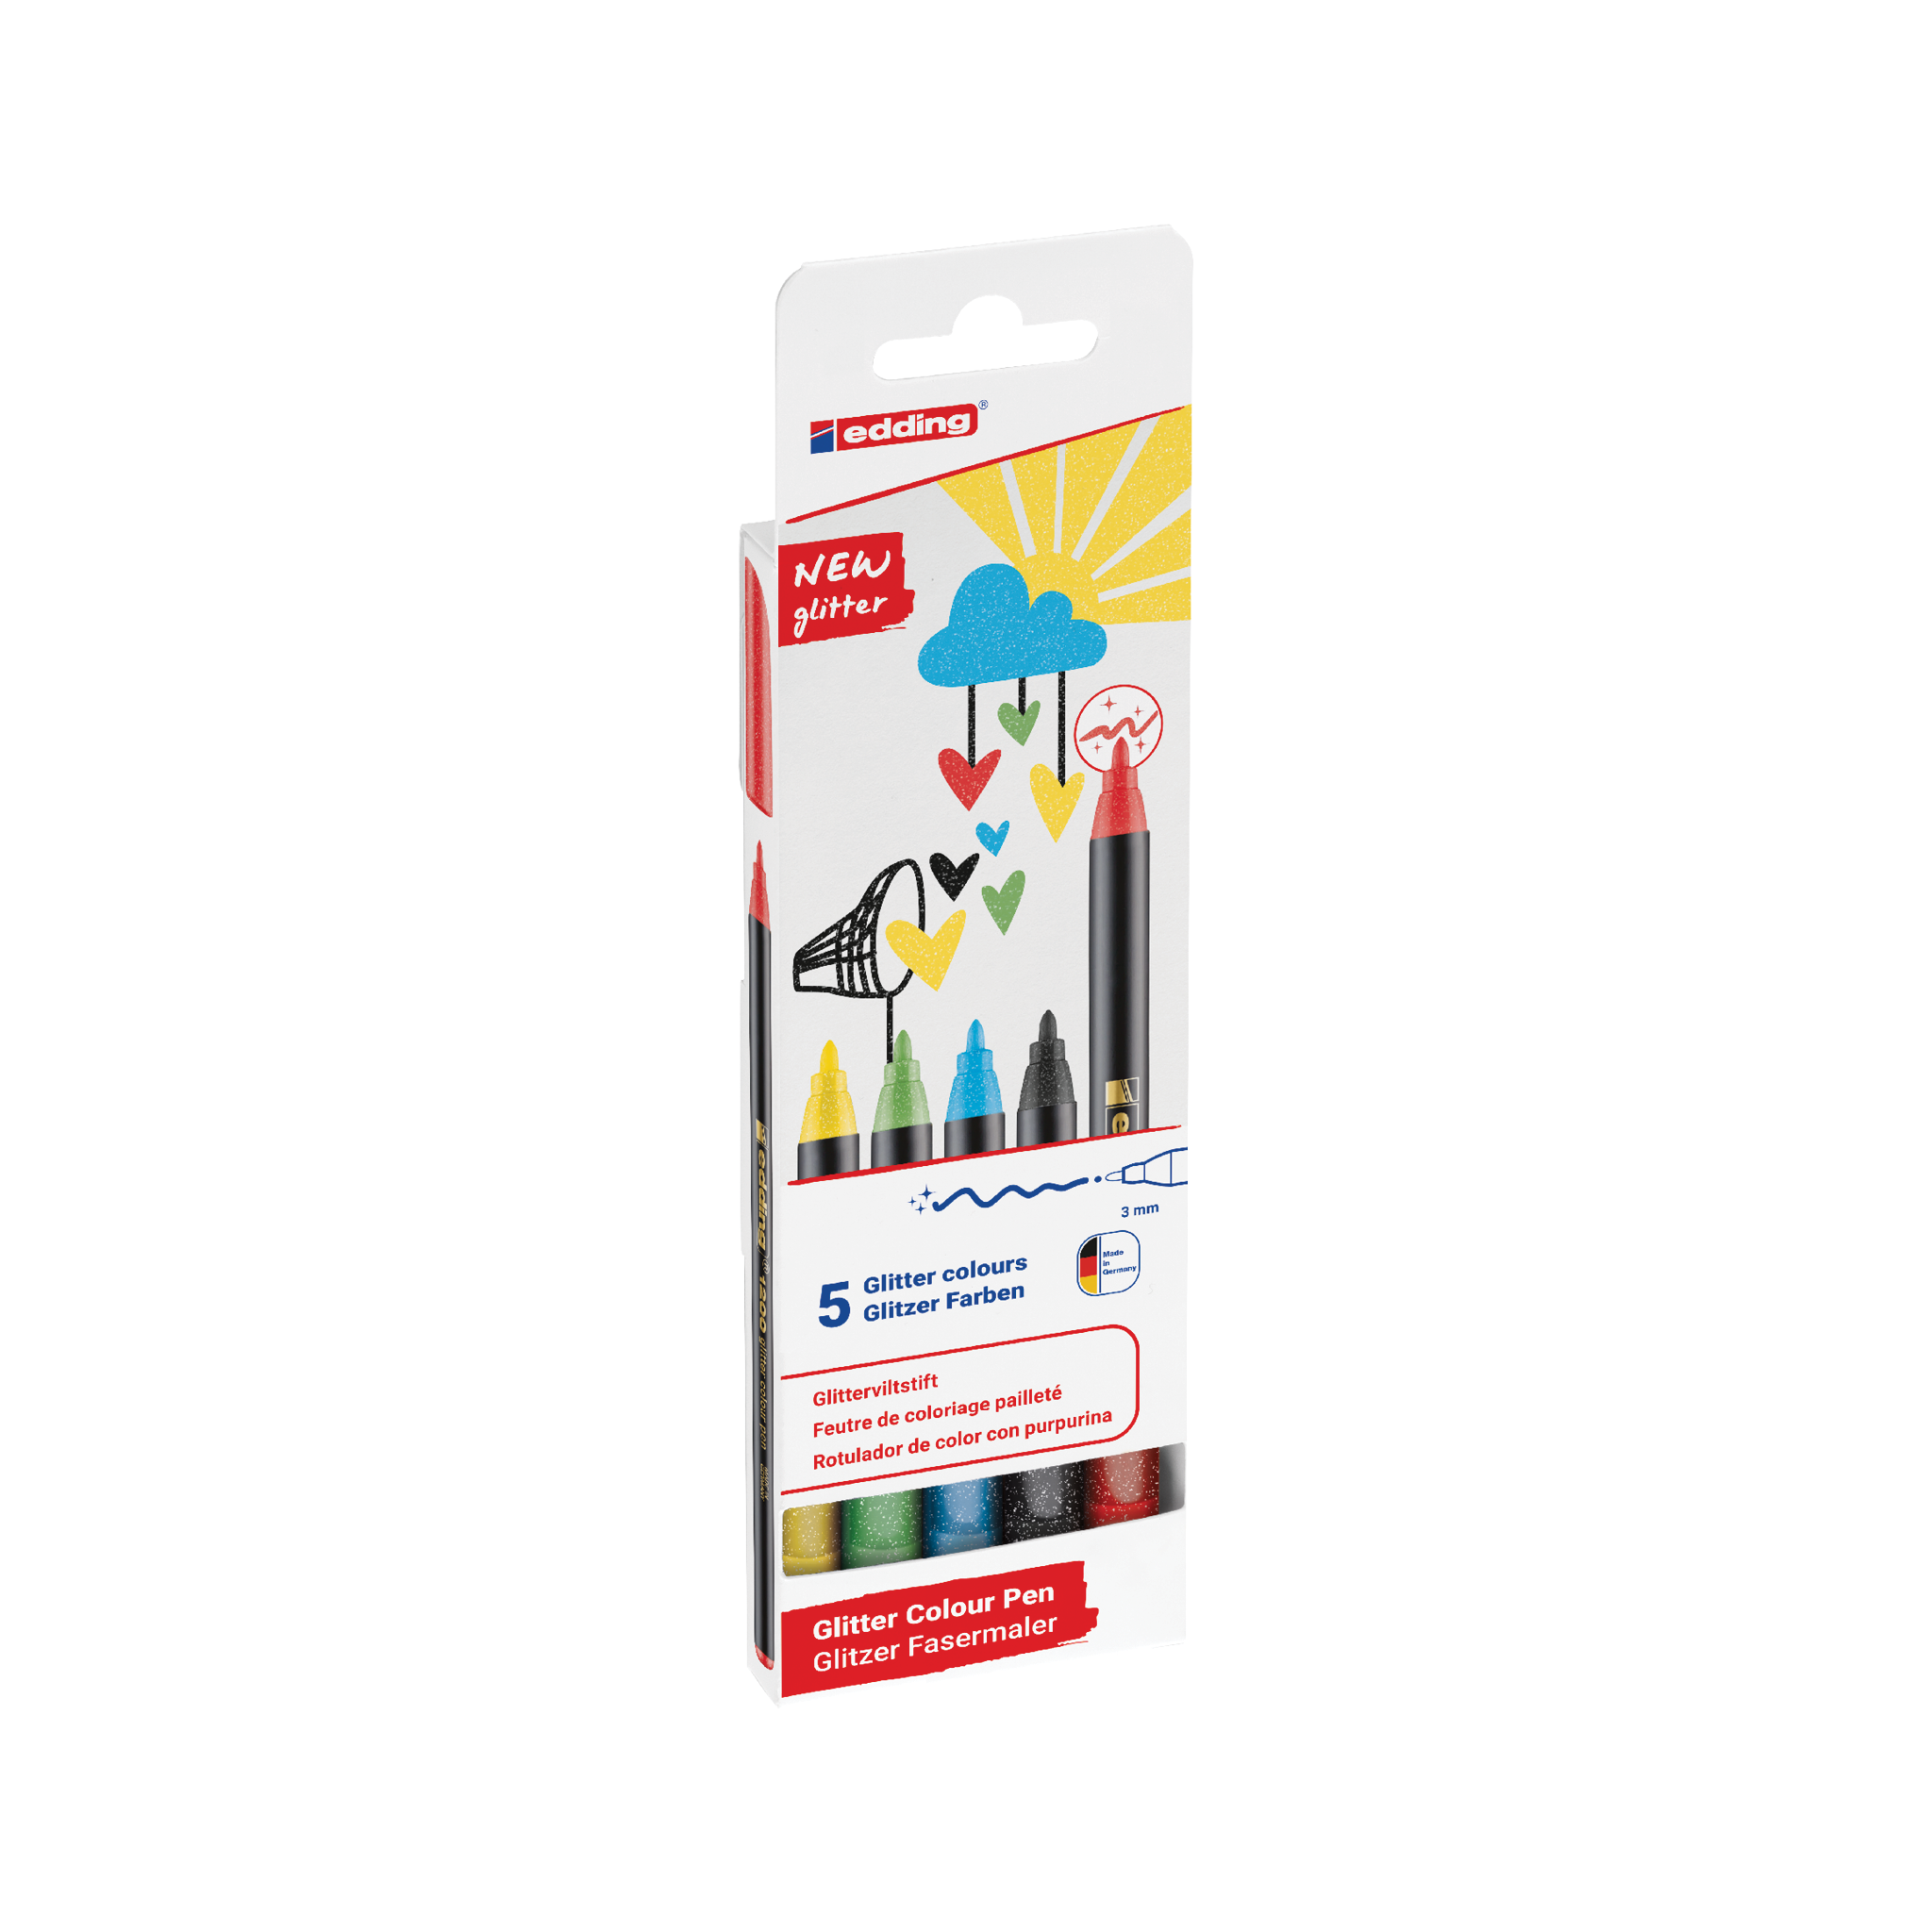 Eine Packung mit fünf edding 1200 glitzer Fasermalern mit verschiedenen Glitzerfarben für kreatives und funkelndes Schreiben oder Zeichnen.